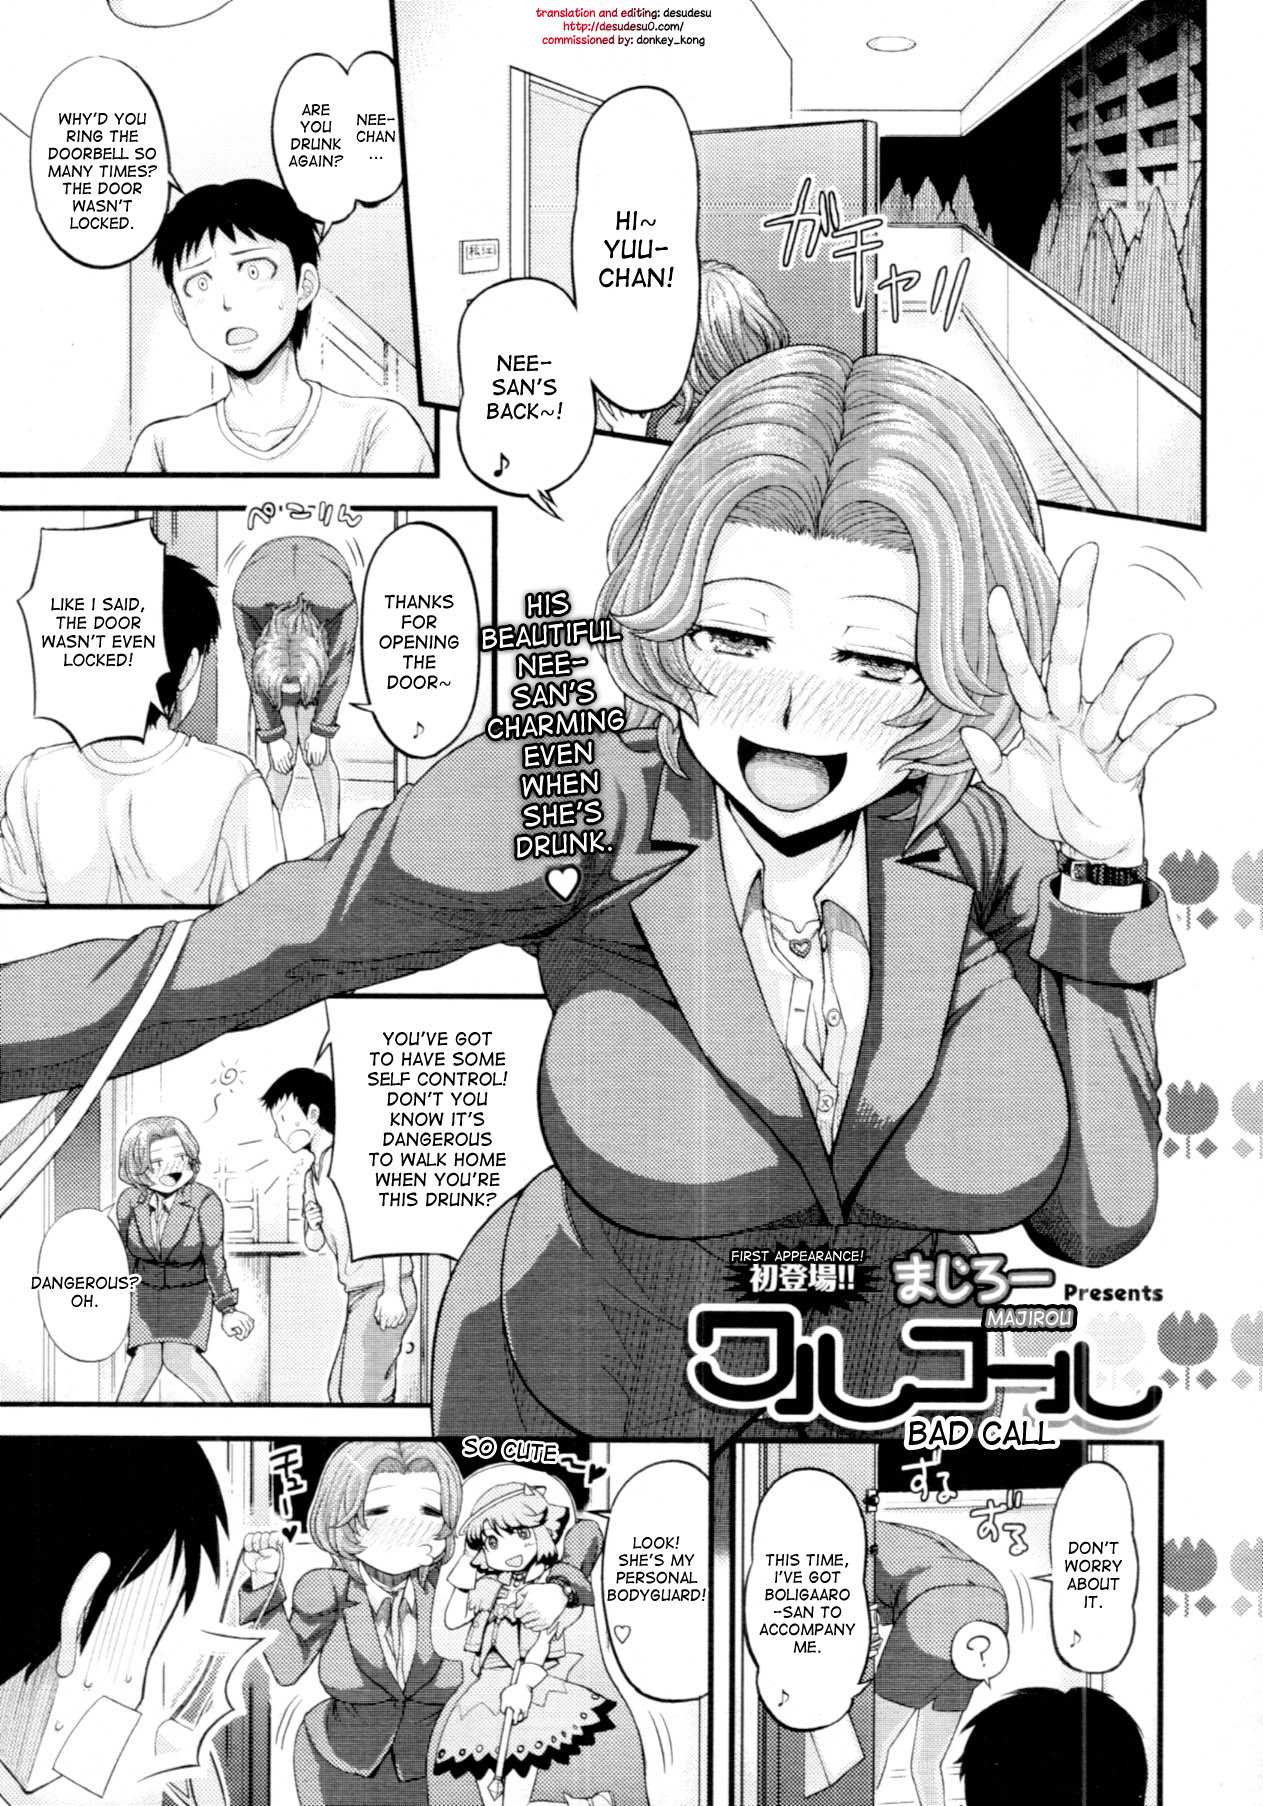 Reading Bad Call Original Hentai By Majirou 1 Bad Call [oneshot] Page 1 Hentai Manga Online